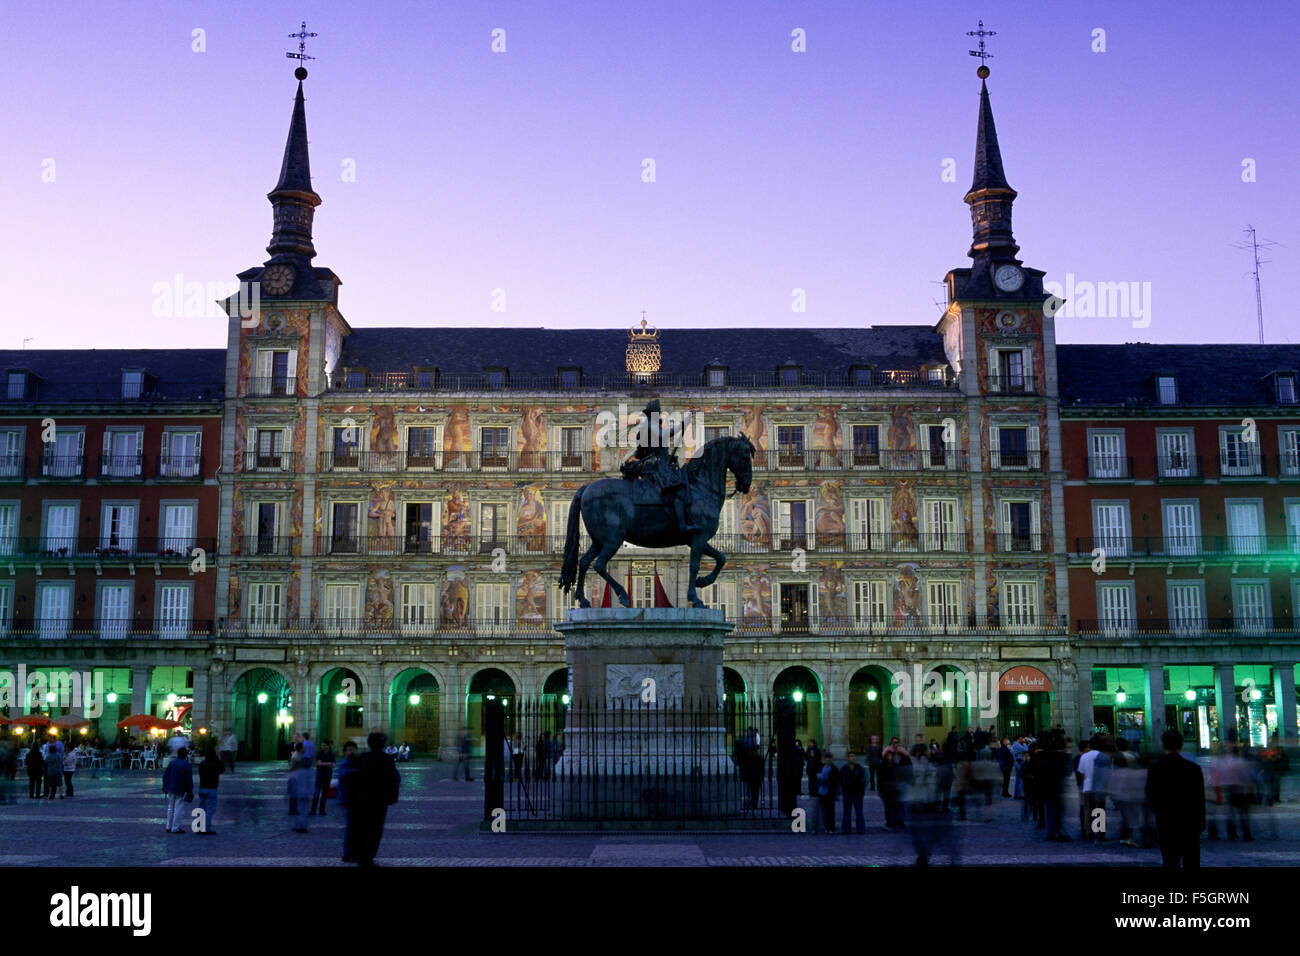 Espagne, Madrid, Plaza Mayor, statue du roi Philippe III et Casa de la Panaderia au crépuscule Banque D'Images